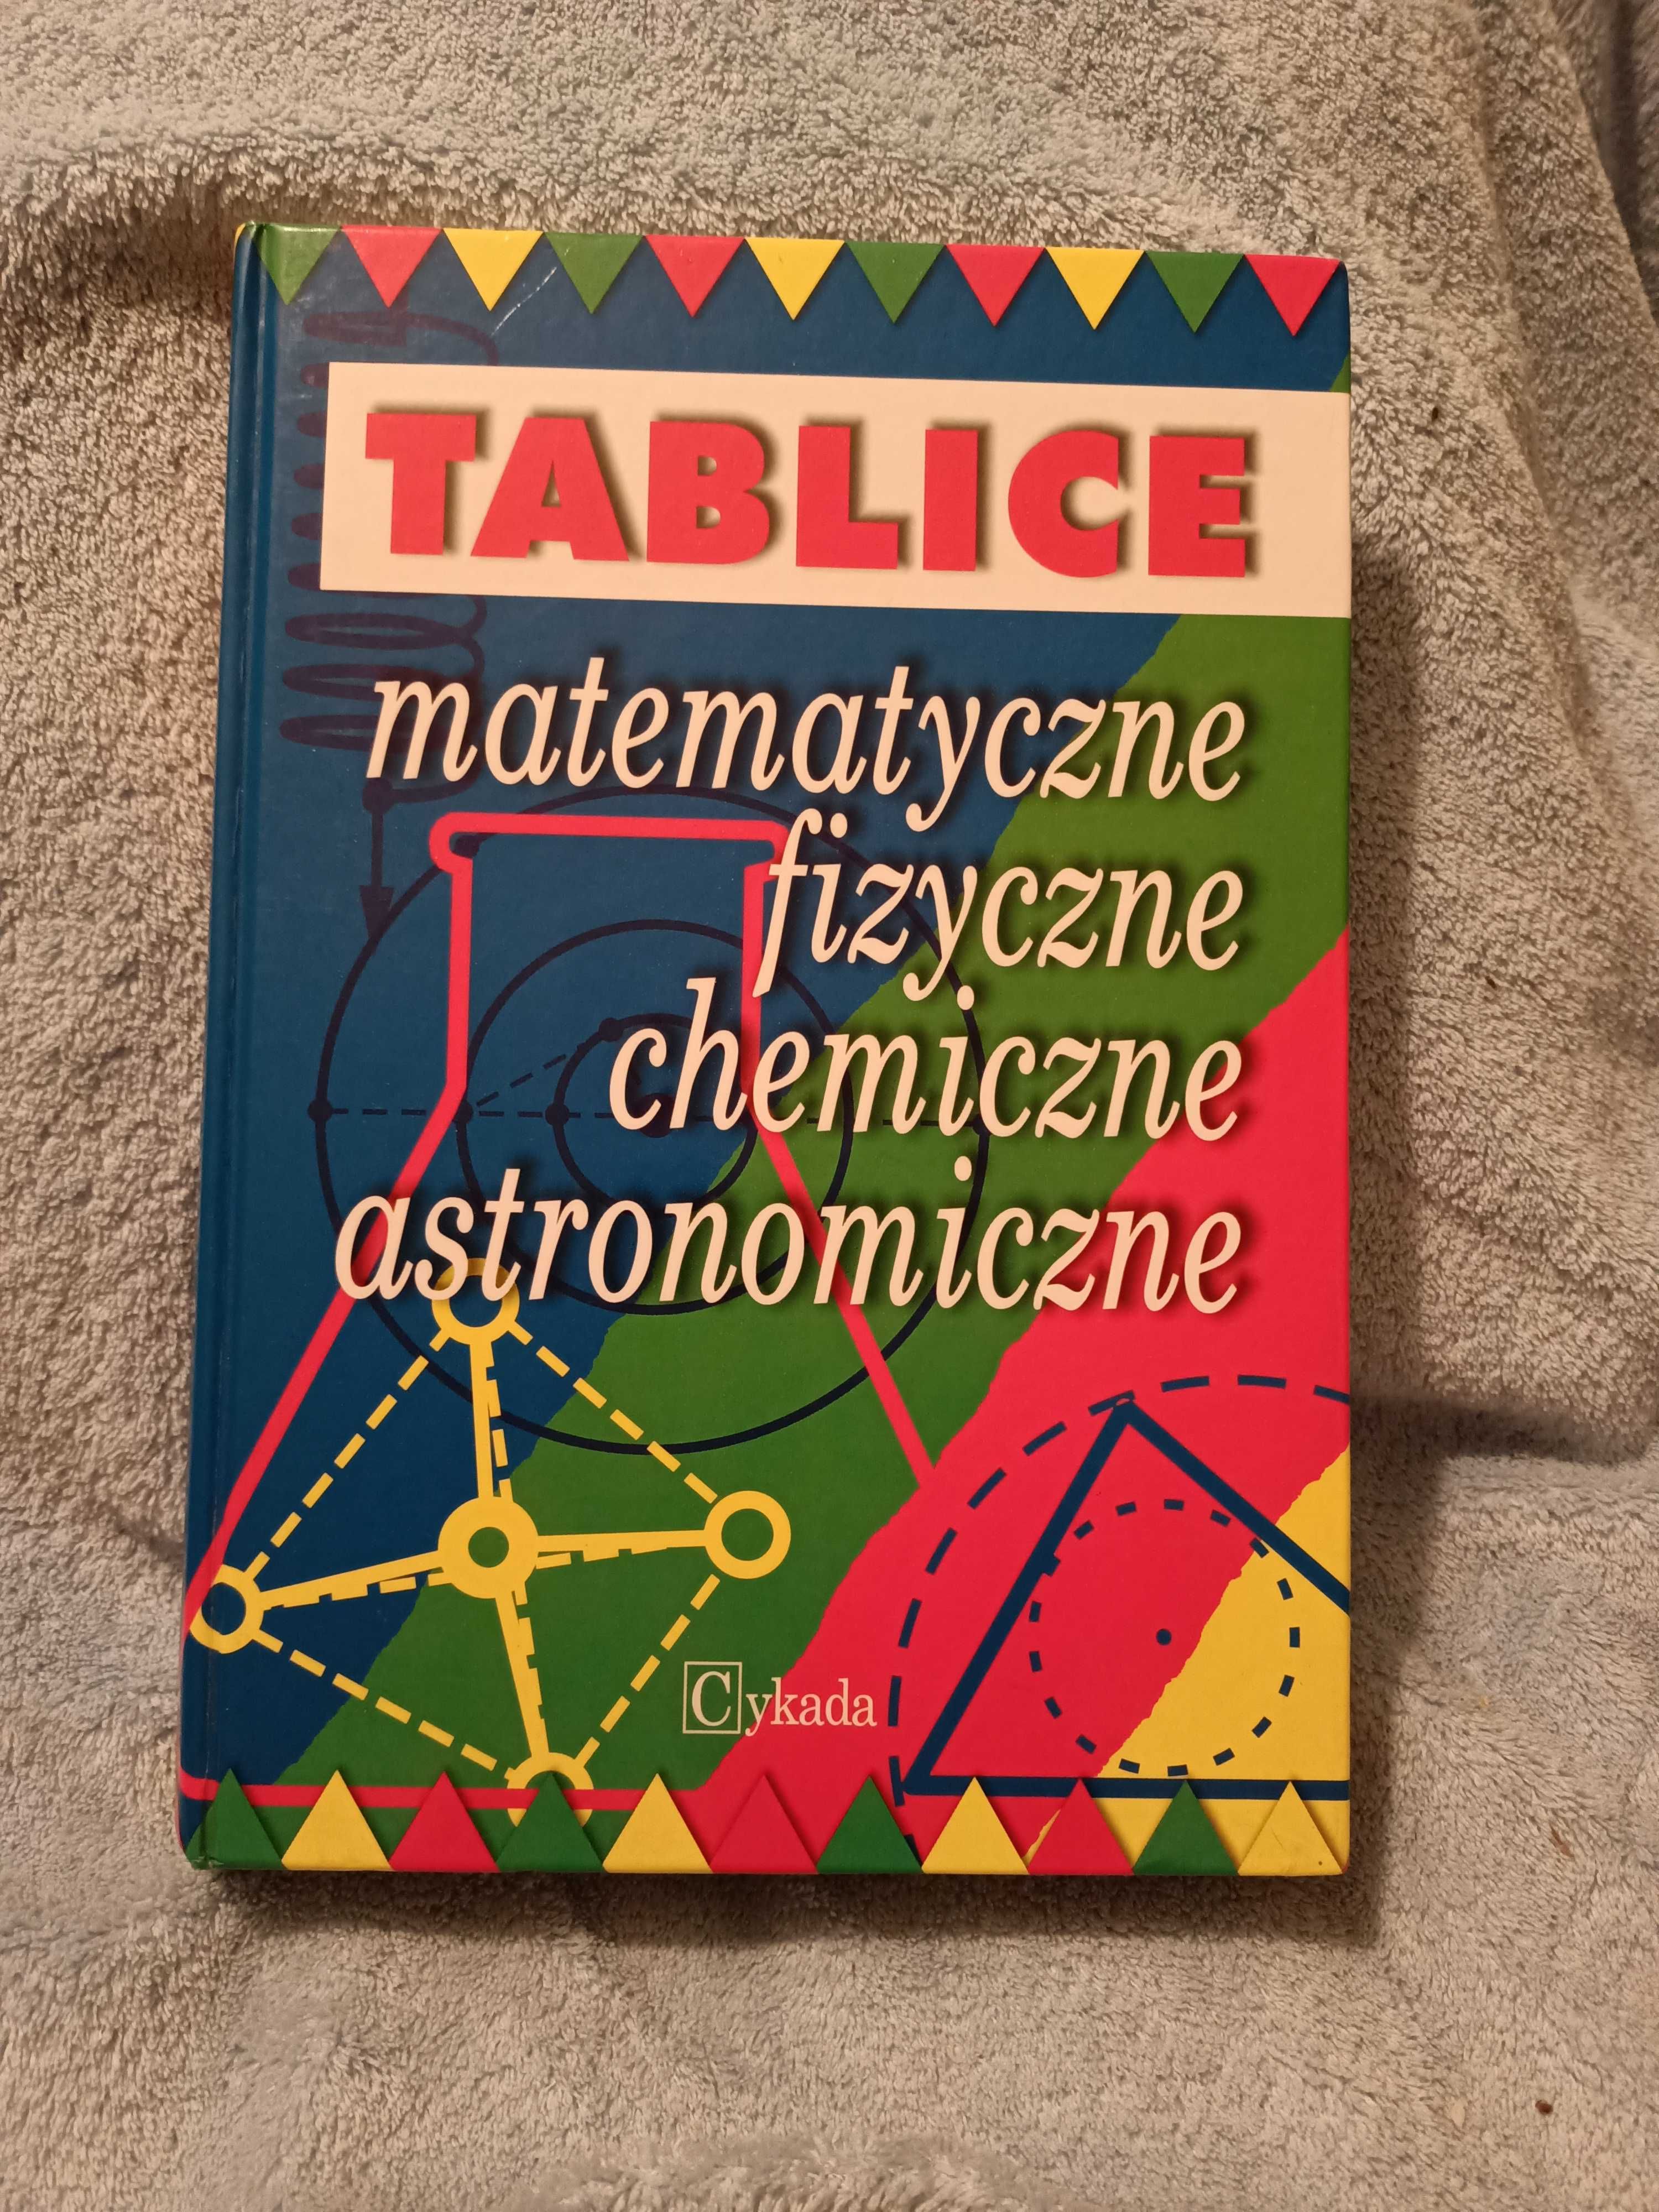 Tablice matematyczne, fizyczne, chemiczne, astronomiczne.